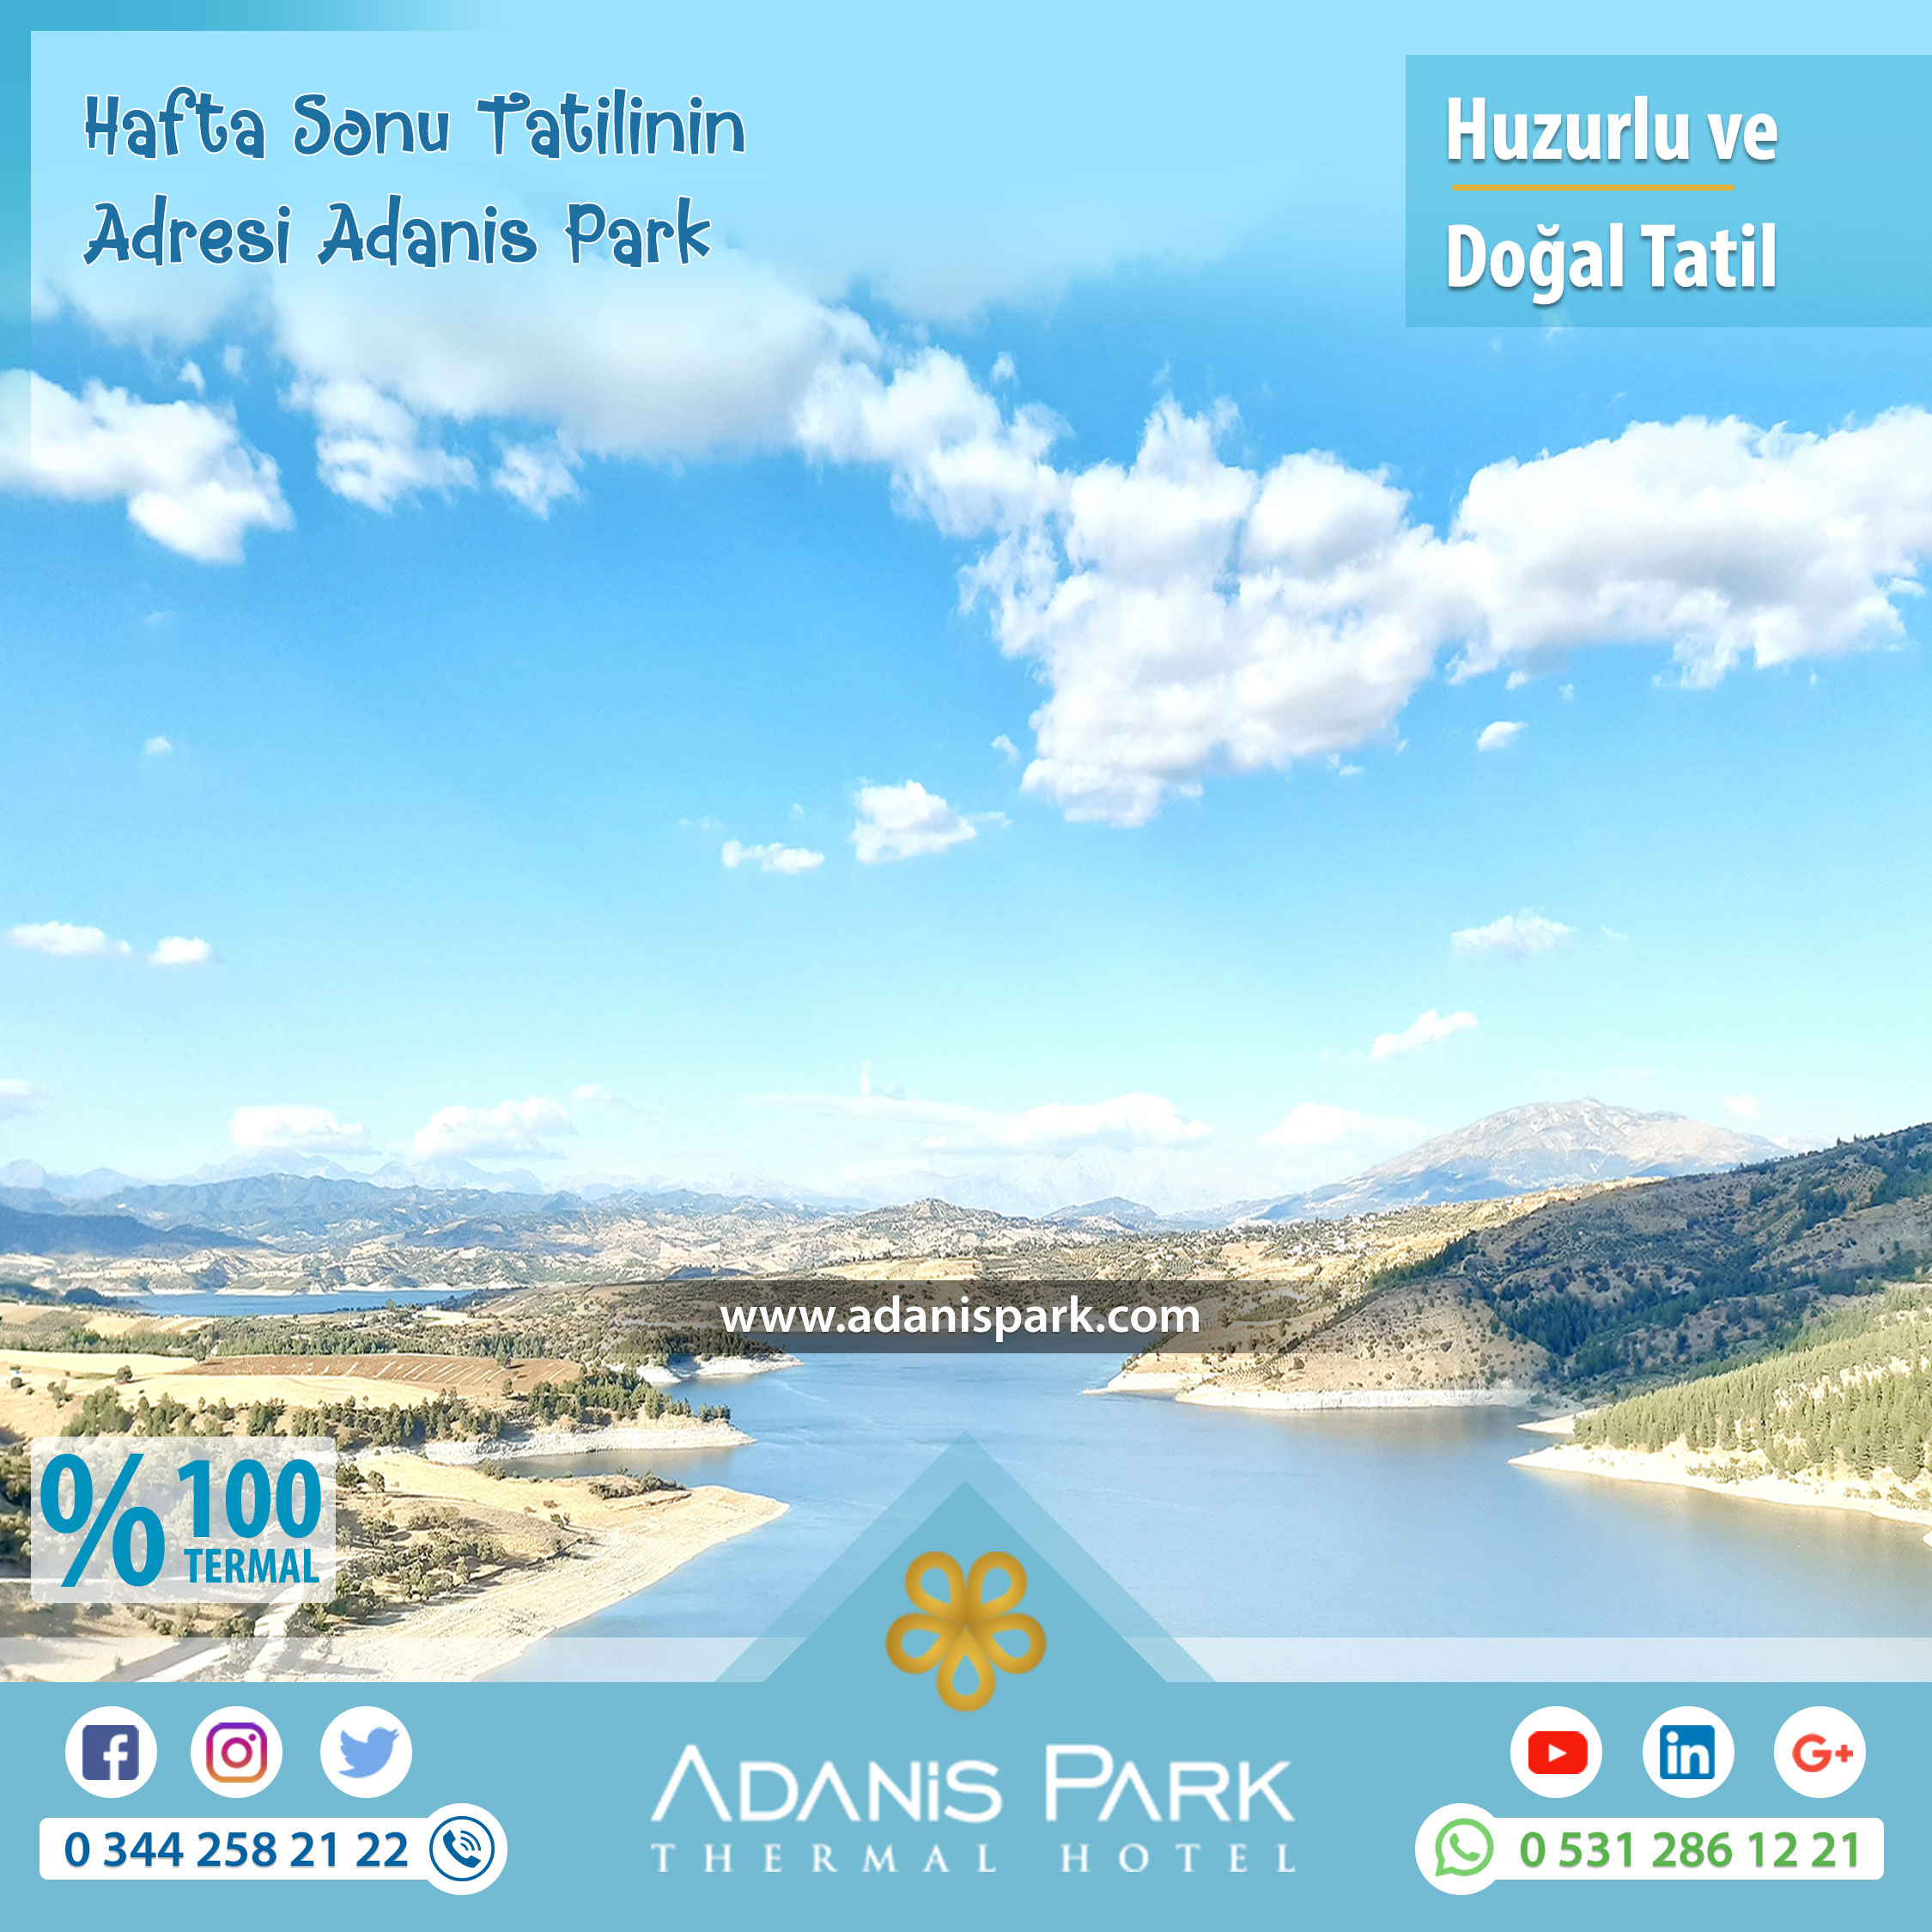 Hafta Sonu Tatilinin Adresi Adanis Park